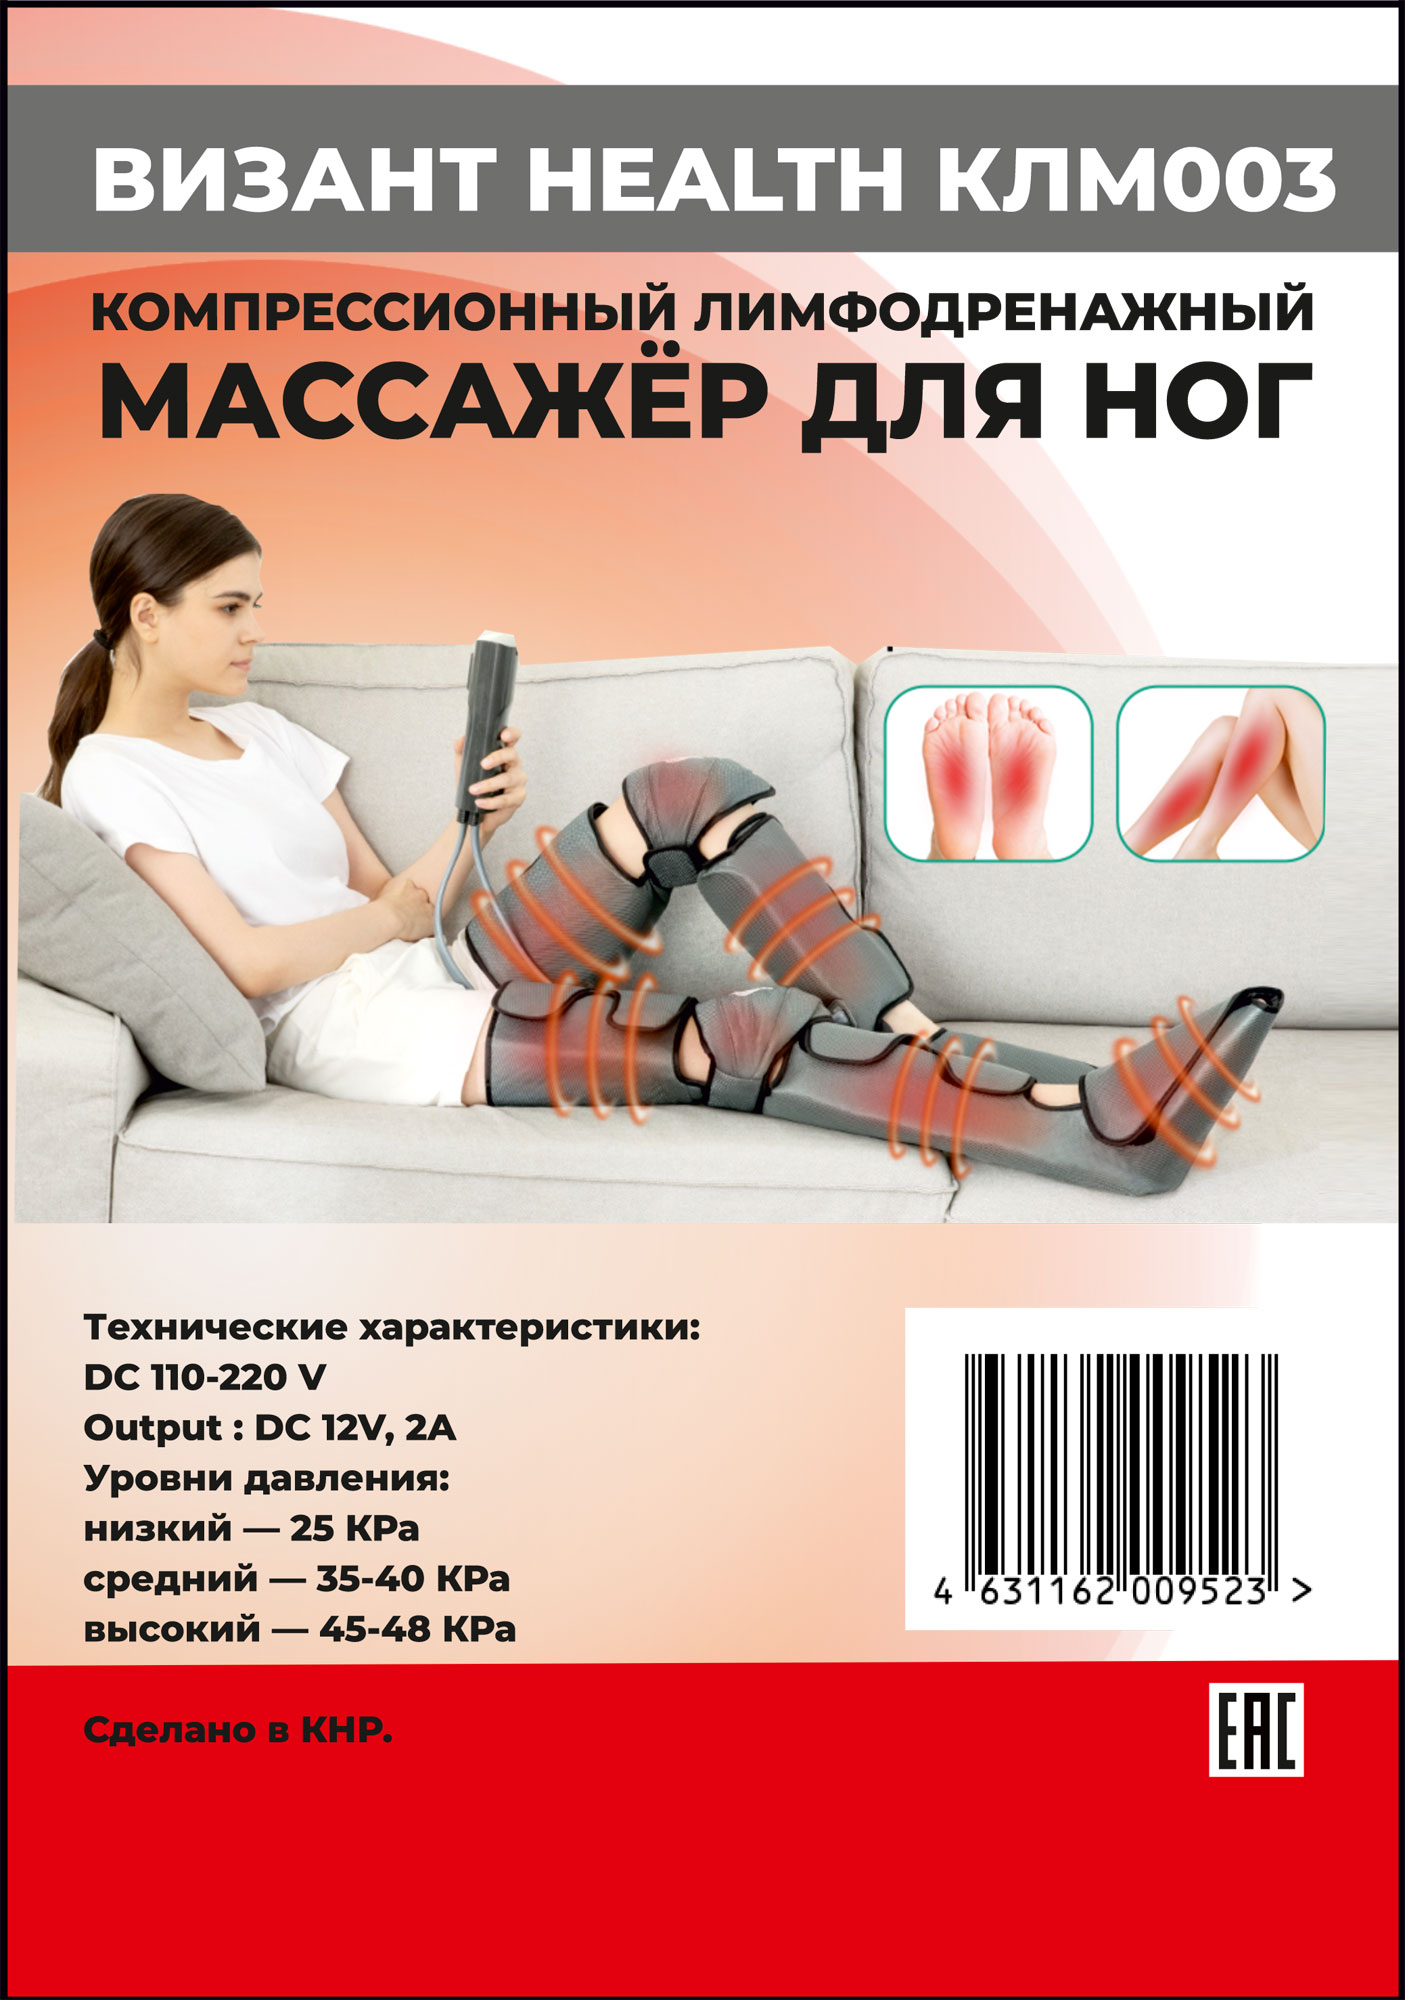 Компресионный для ног Vizant Лимфодренажный массажер для ног HEALTH КЛМ003 - фото 12